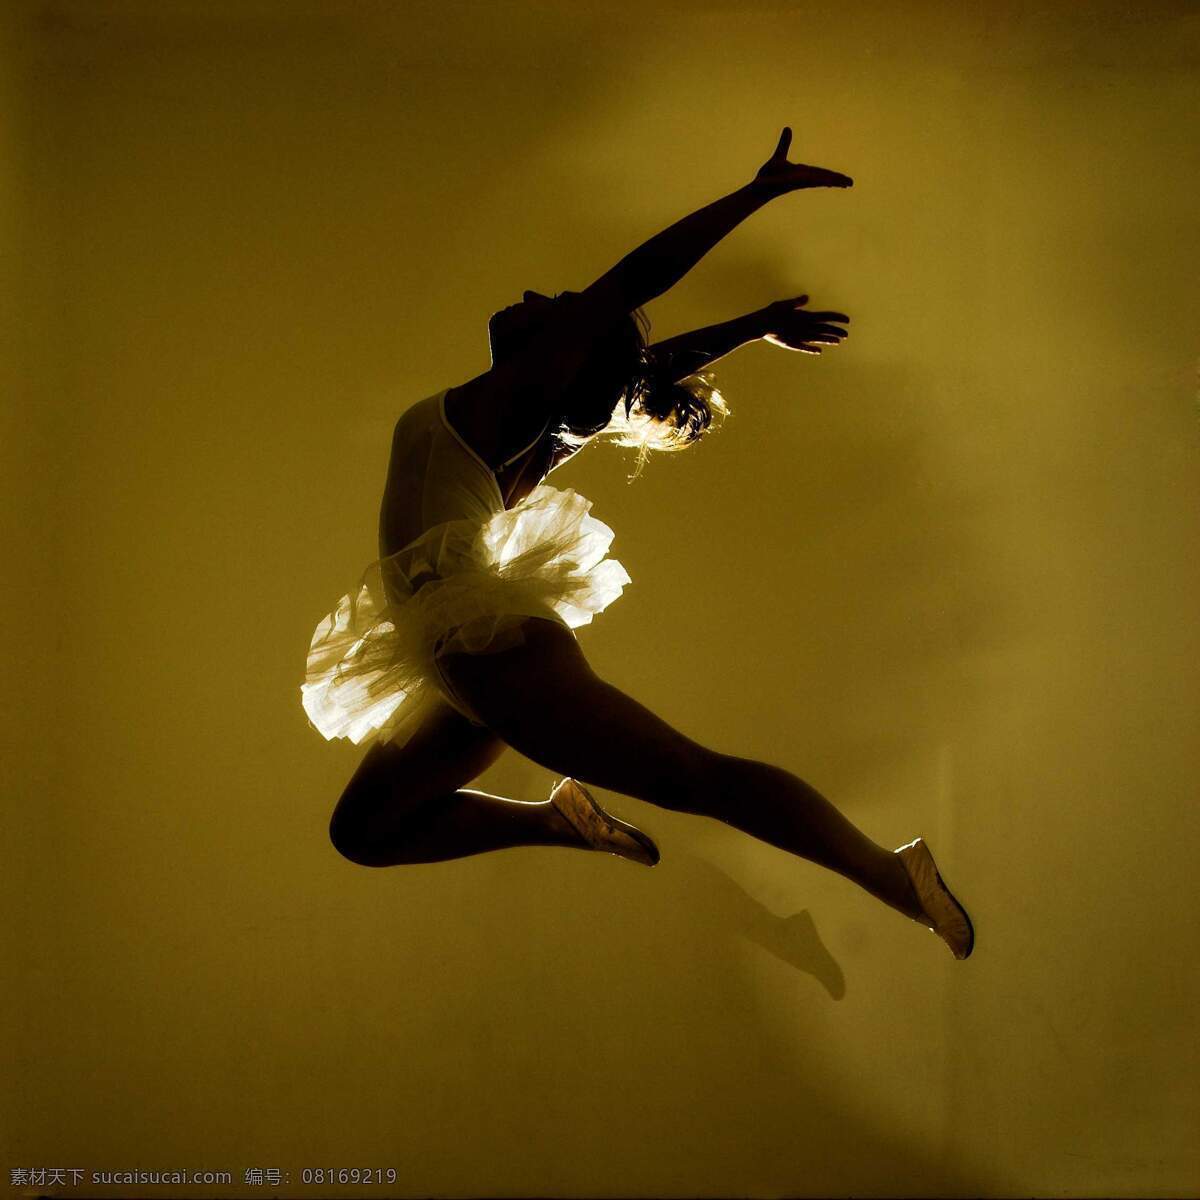 芭蕾 高雅 光影 女性 伸展 室内 特写 舞者 舞蹈 舞姿 ballet 艺术 优雅 跳跃 jump leap 侧影 舞蹈音乐 文化艺术 psd源文件